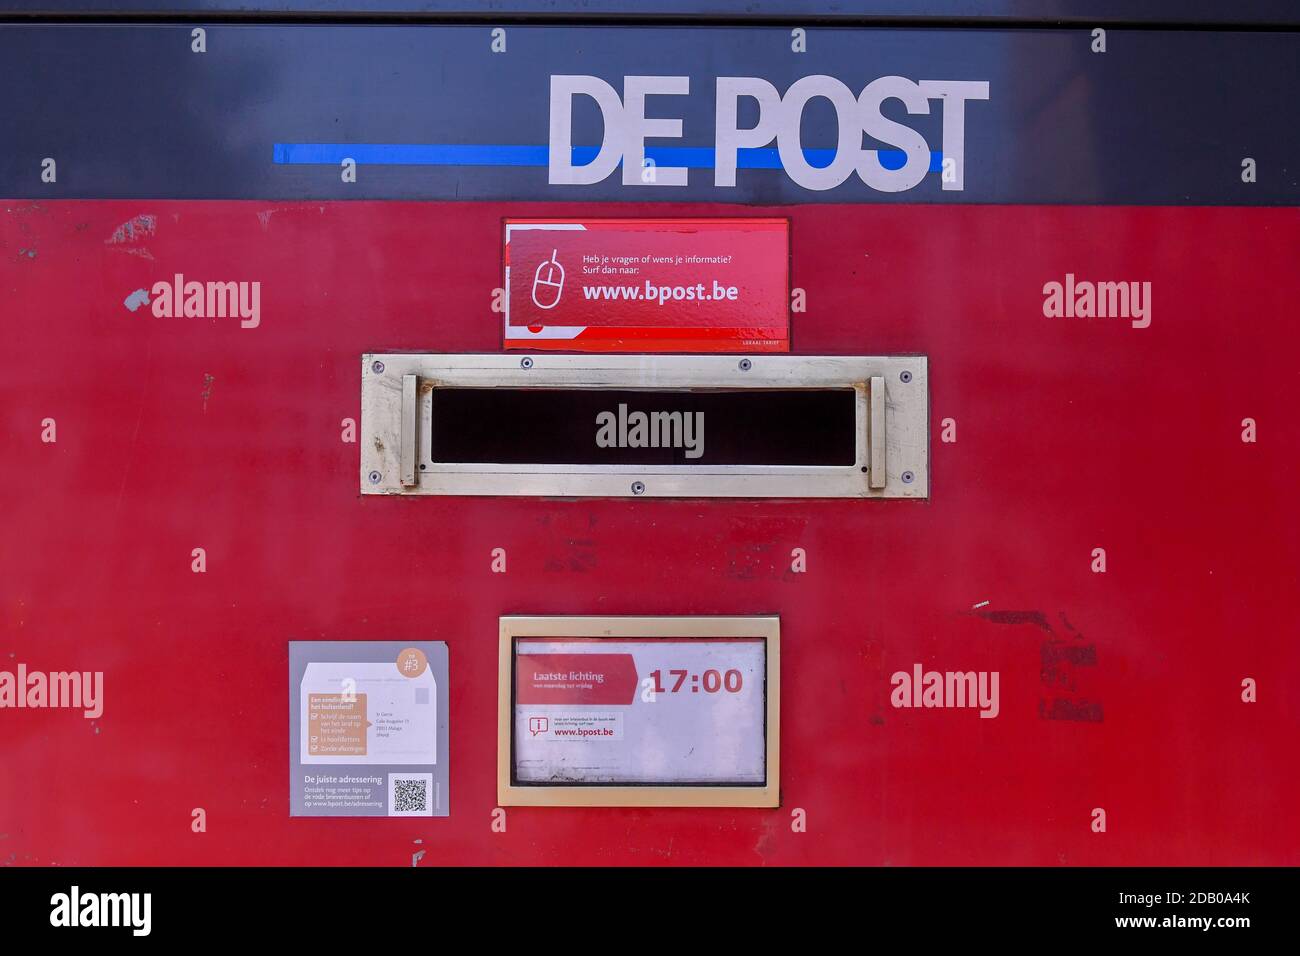 La ilustración muestra un buzón en la oficina de correos de Bpost en Ravels, lunes 29 de junio de 2020. BELGA FOTO LUC CLAESSEN Foto de stock